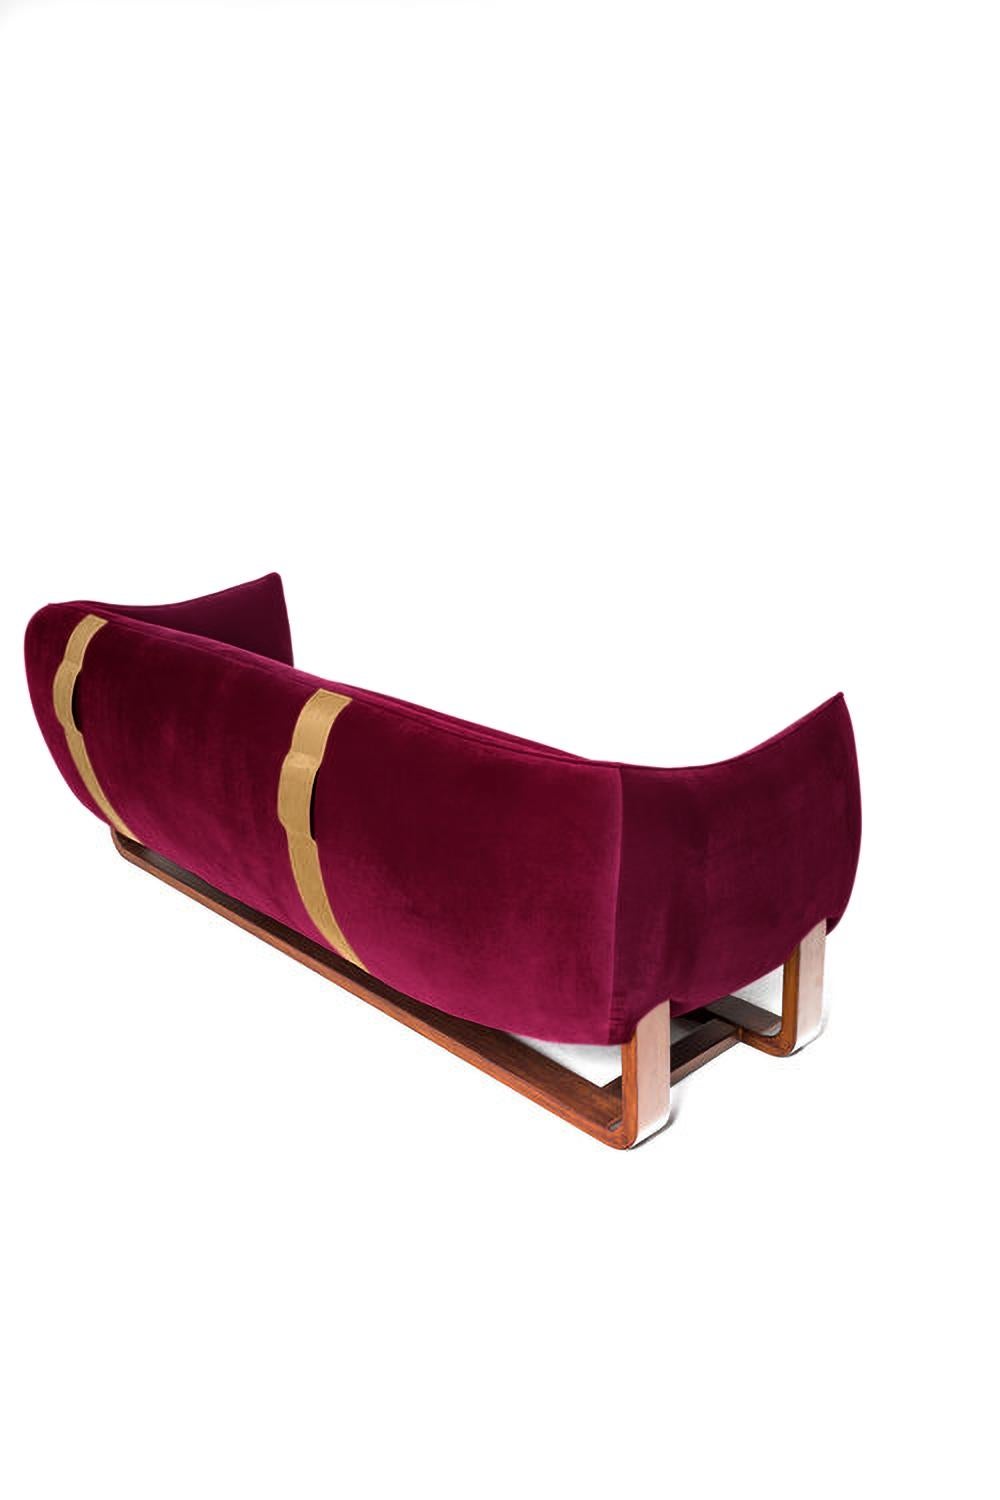 Die Designerin Marie Burgos hat das Designkonzept ihres gefeierten Loungesessels Milo erweitert und das neu eingeführte Sofa Milo entworfen. Sie verwendet einen geformten Holzrahmen, um die luxuriösen, bequemen Sitzmöbel zu stützen, die mit einer